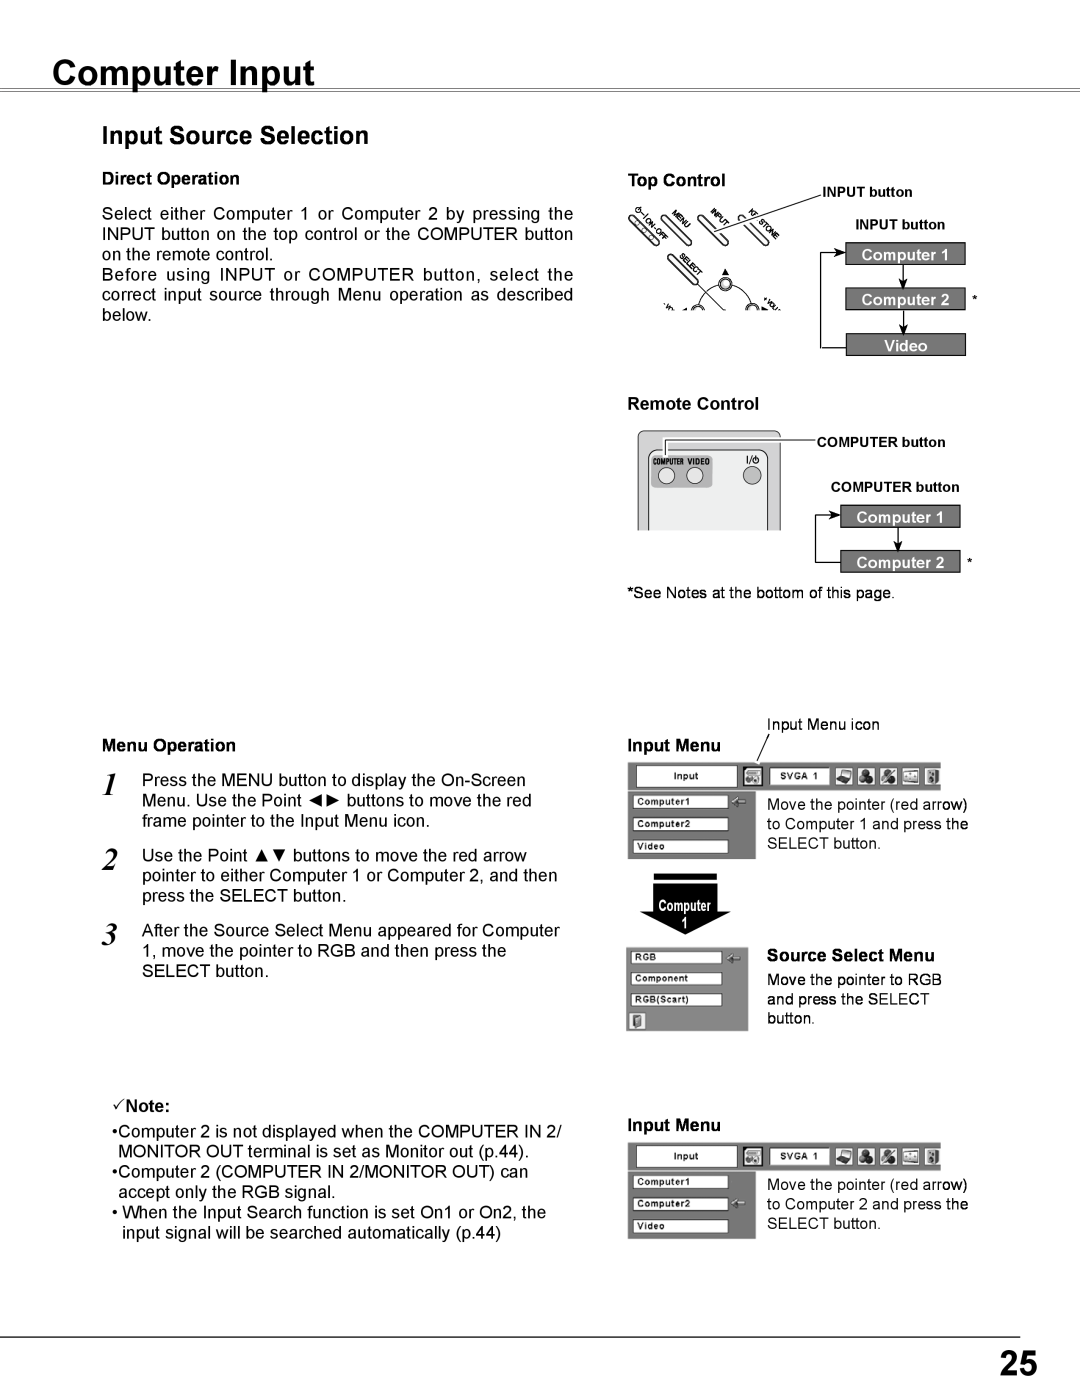 Sanyo PLC-WXL46 Computer Input, Input Source Selection, Direct Operation, Menu Operation, Note, Top Control, Input Menu 